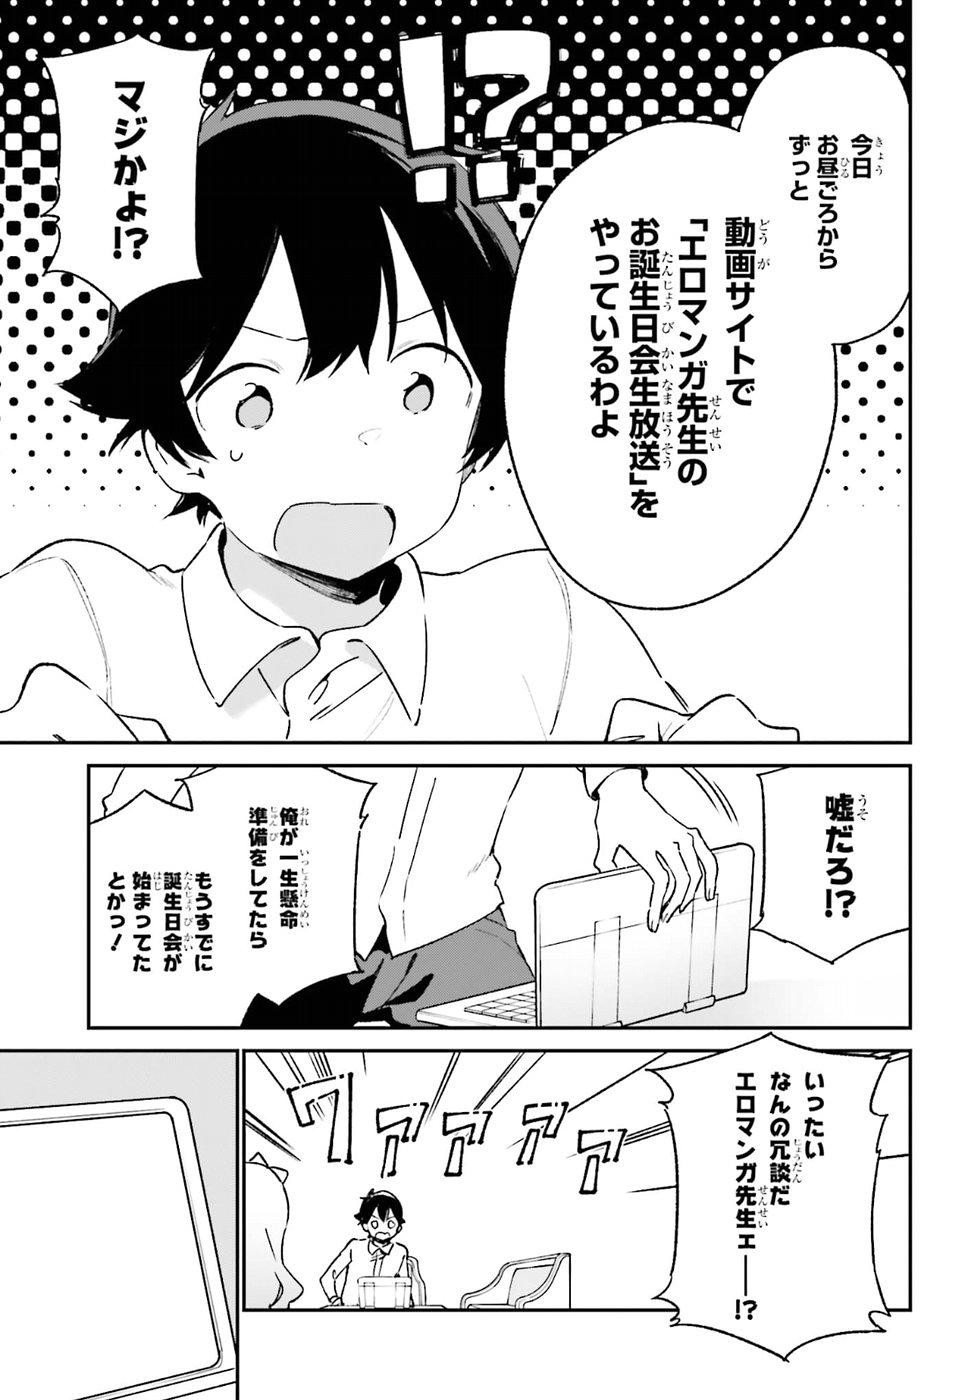 Ero Manga Sensei - Chapter 50 - Page 11